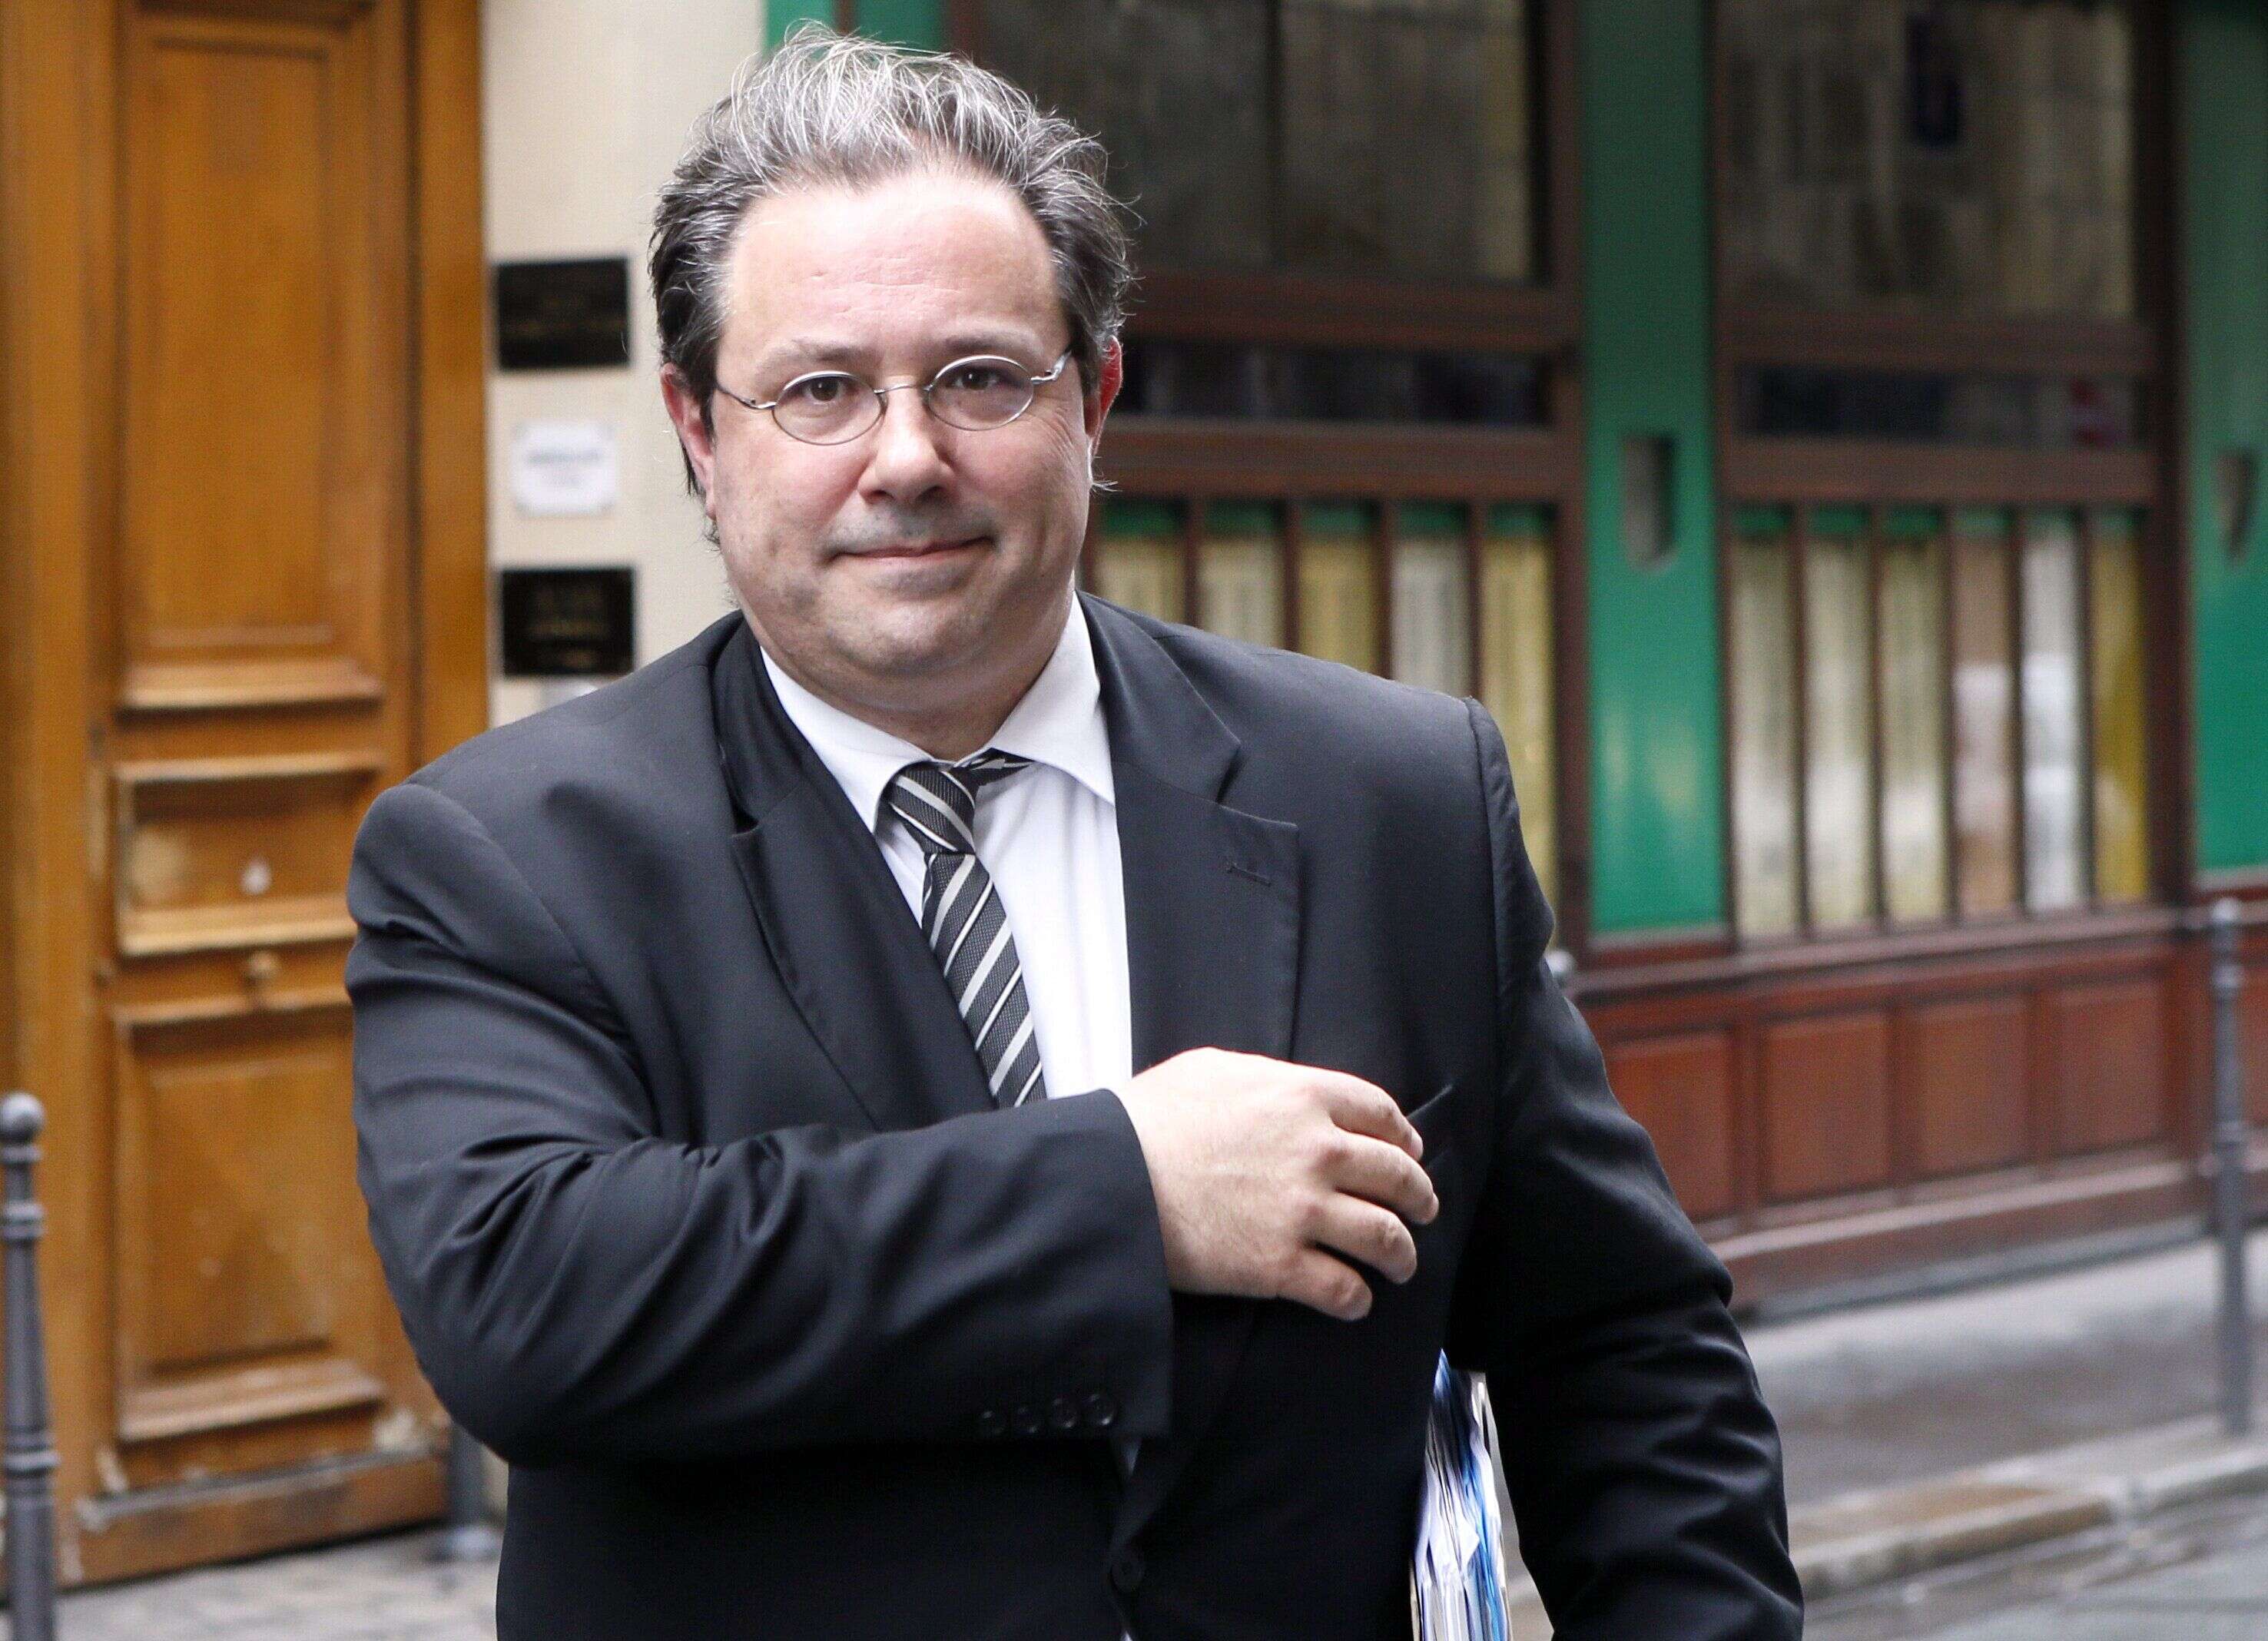 Jérôme Peyrat, conseiller de Macron, démissionne après une enquête liée à sa vie privée (photographié au siège de l'UMP en avril 2103)